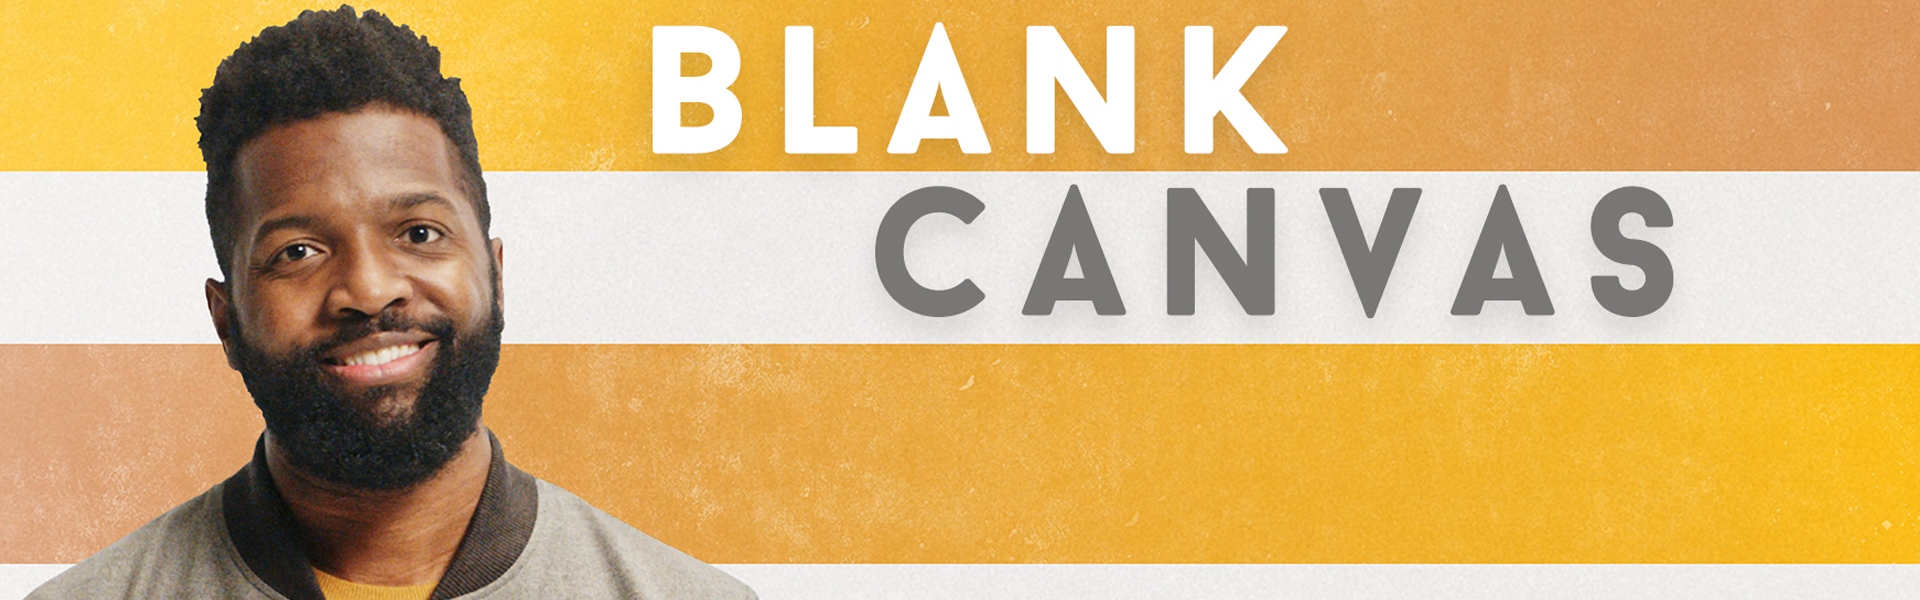 Découvrez Blank Canvas, une série originale de SAP